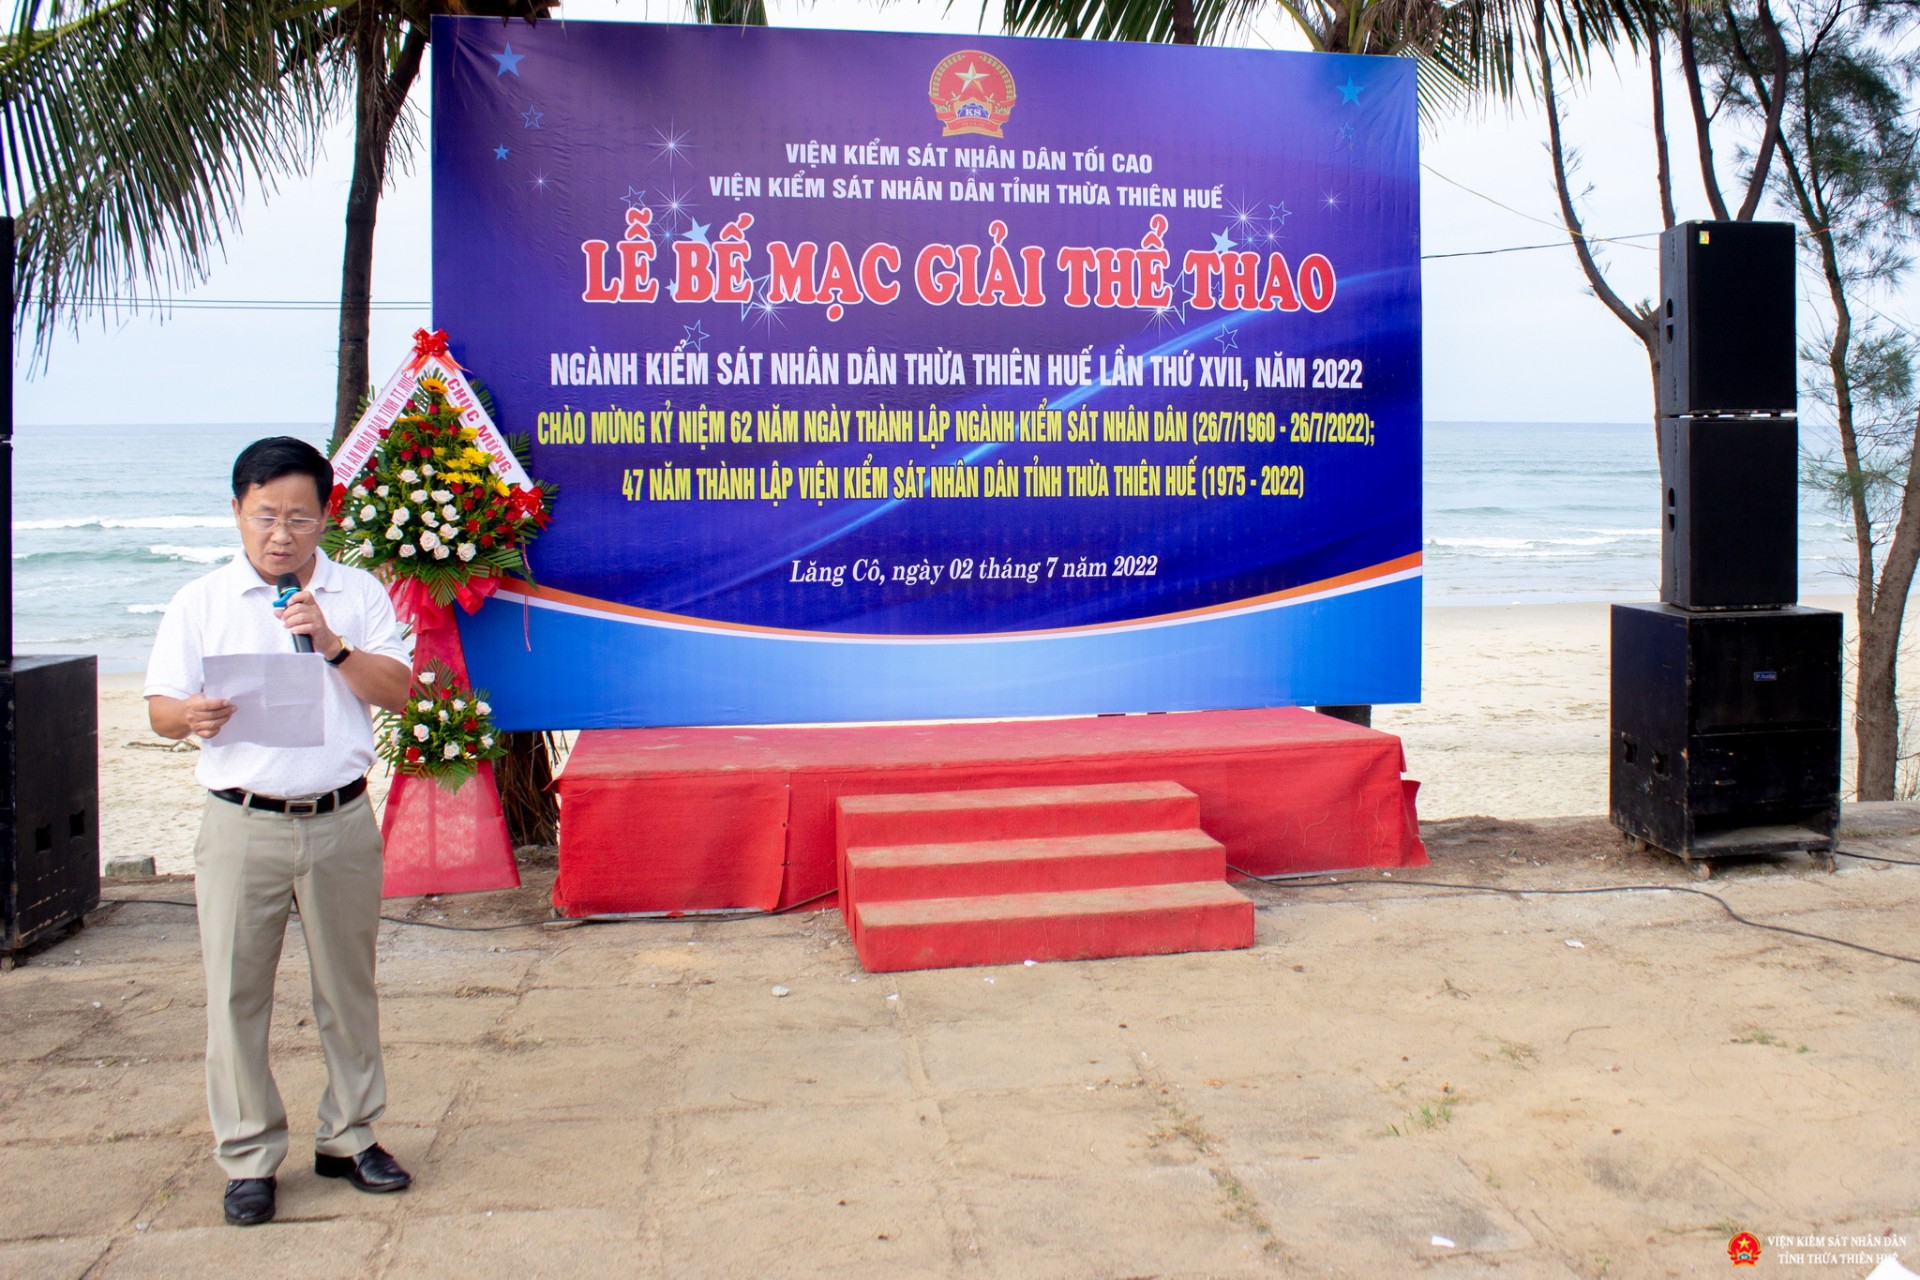 Hội thao kỷ niệm 62 năm Ngành kiểm sát nhân dân Thừa Thiên Huế